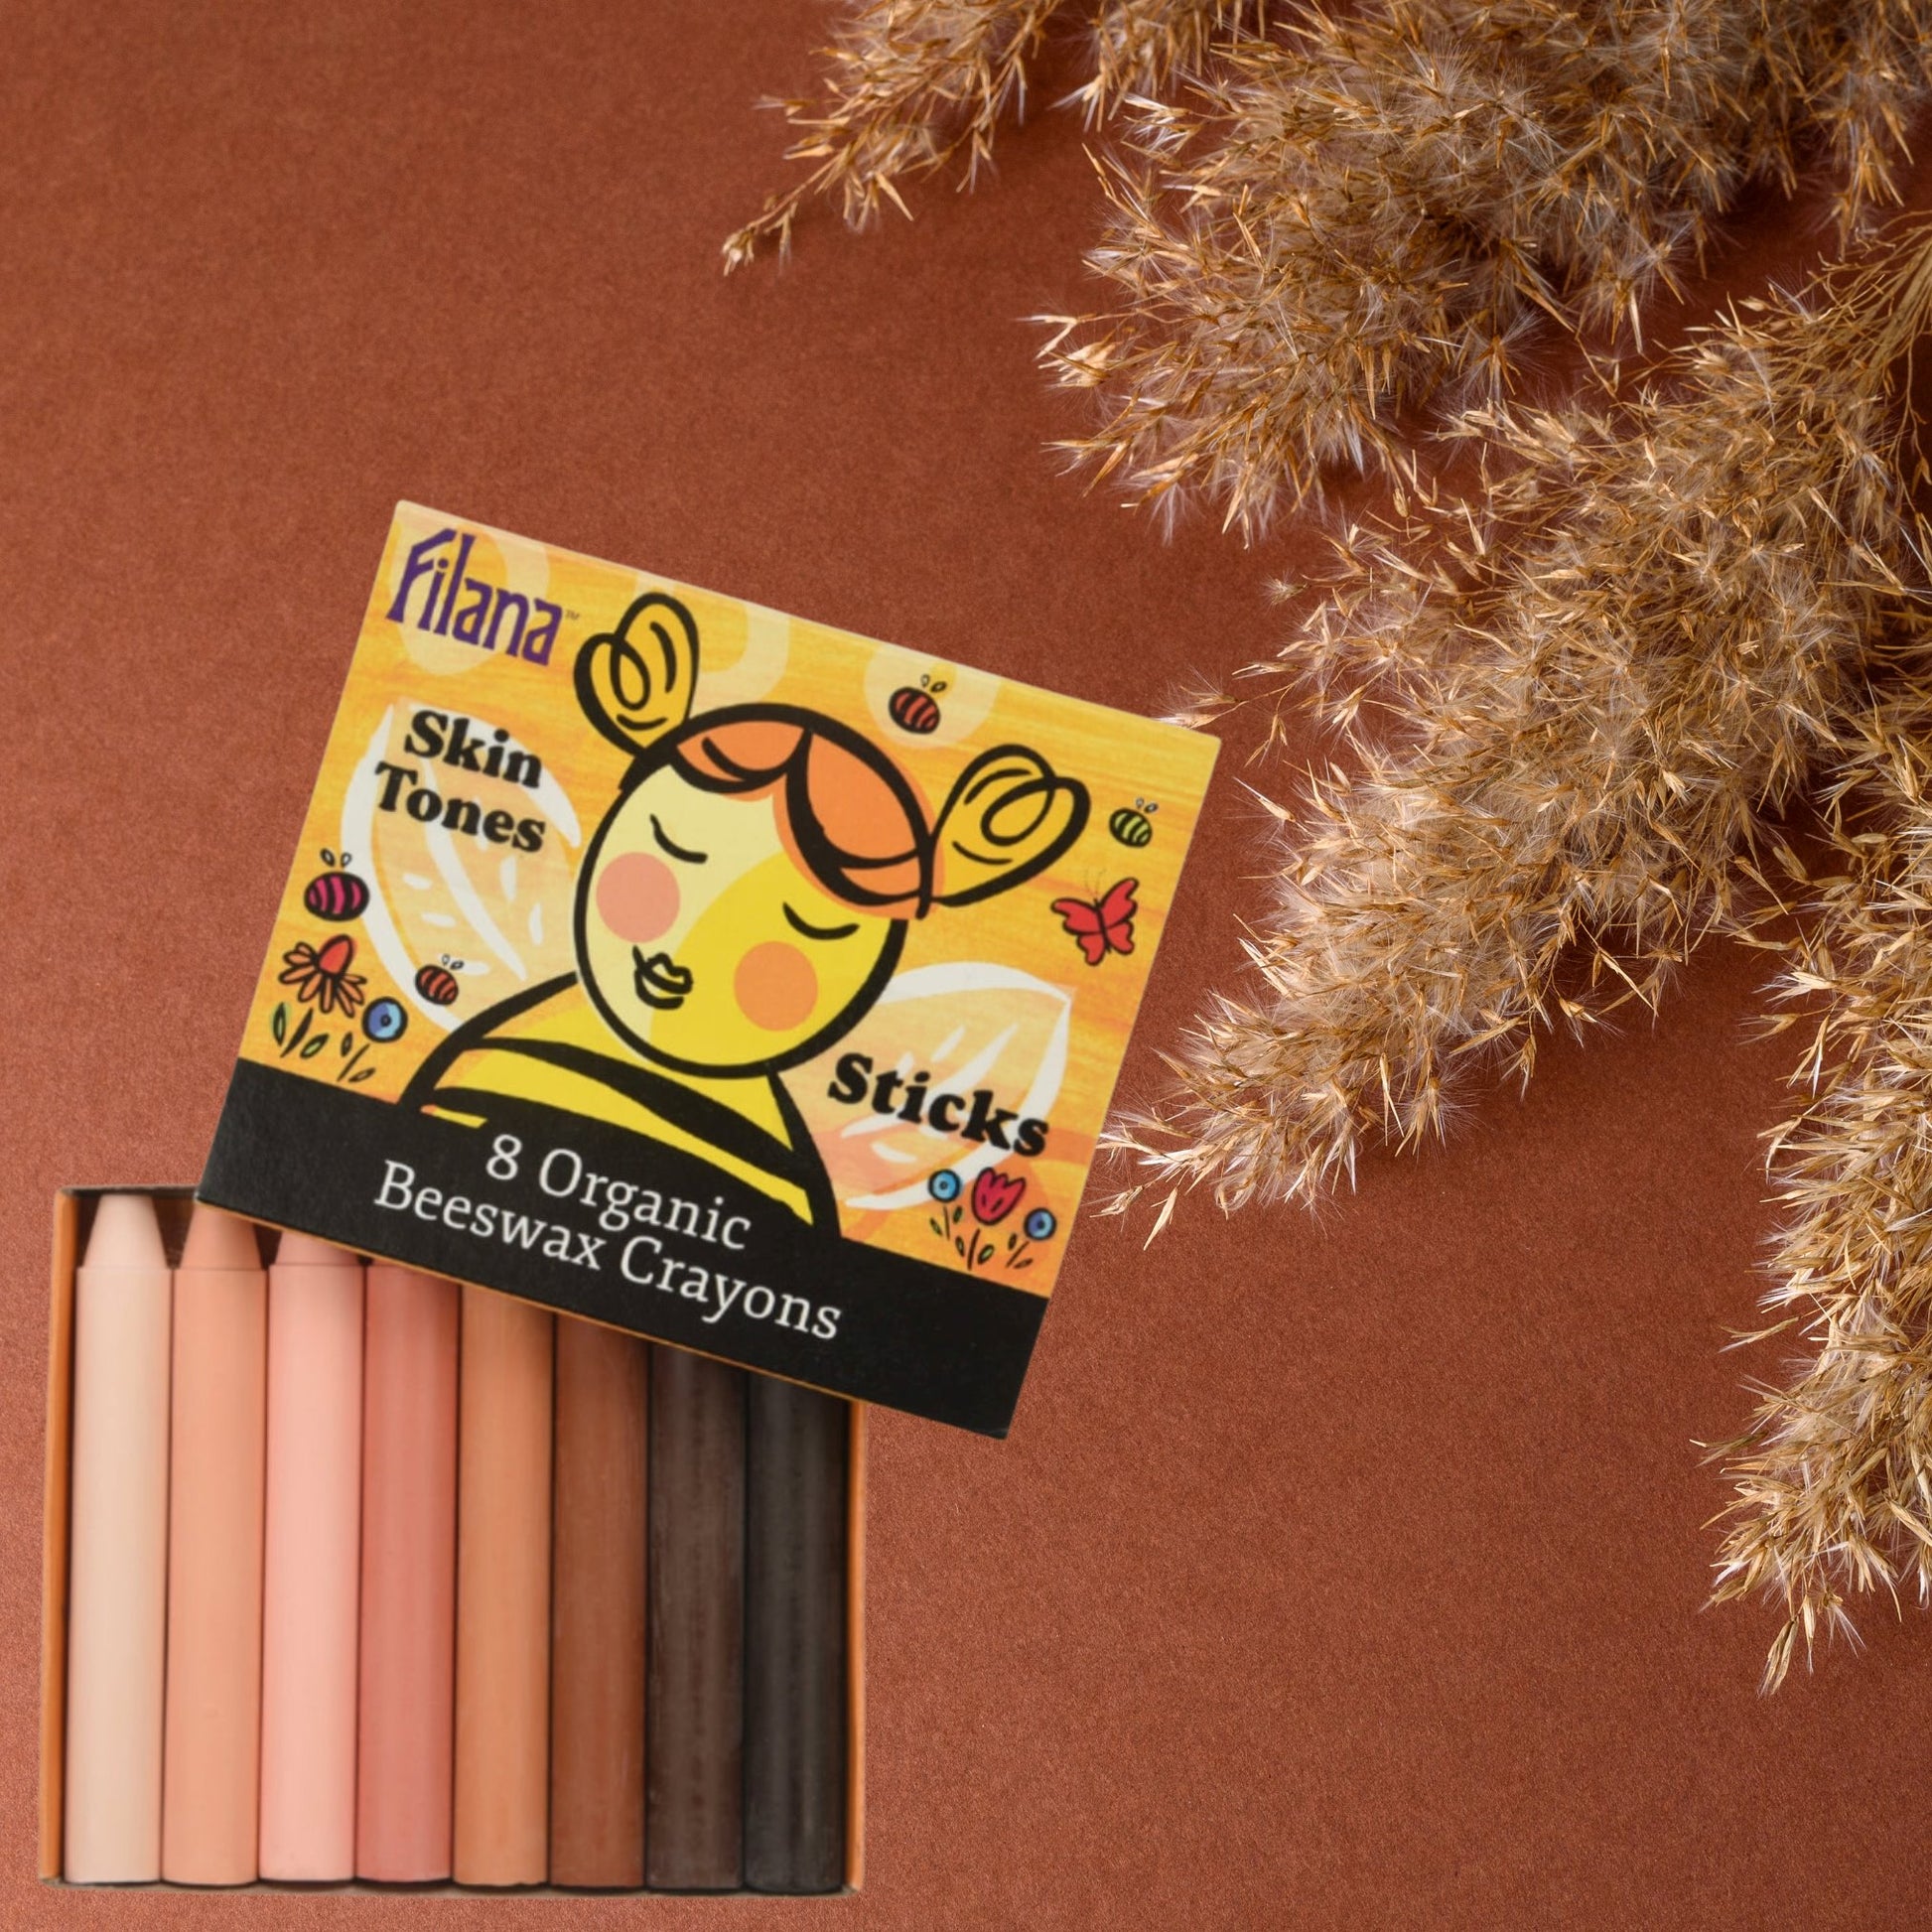 Filana Skin Tone Crayons — Organic Beeswax Stick Crayons